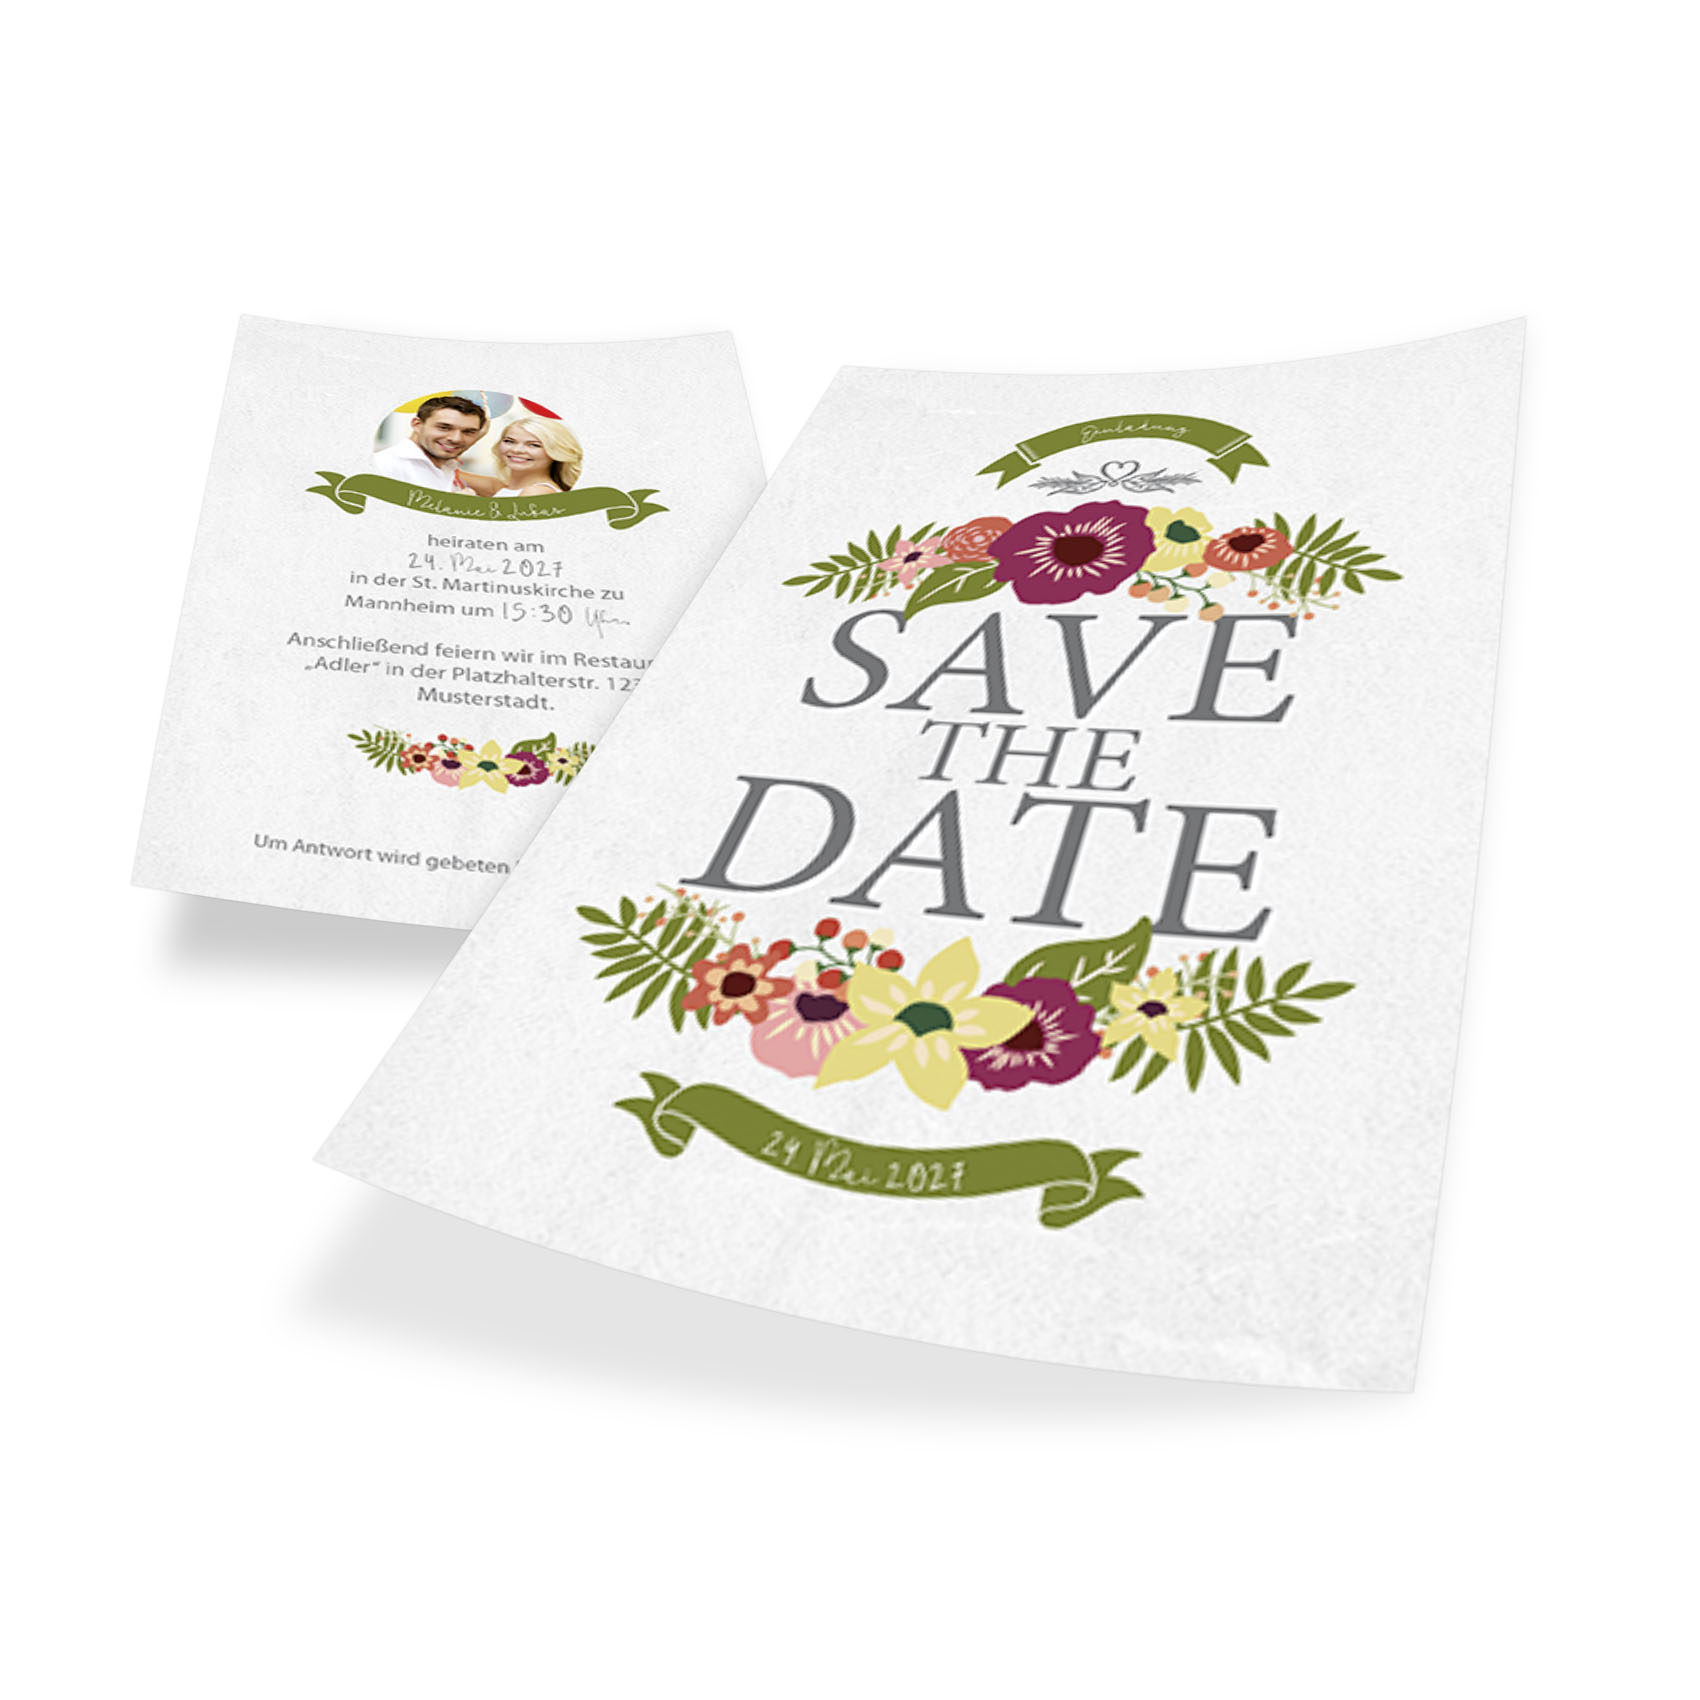 Hier ist die offizielle Einladung zur Hochzeit als kleine Save-the-Date-Karte